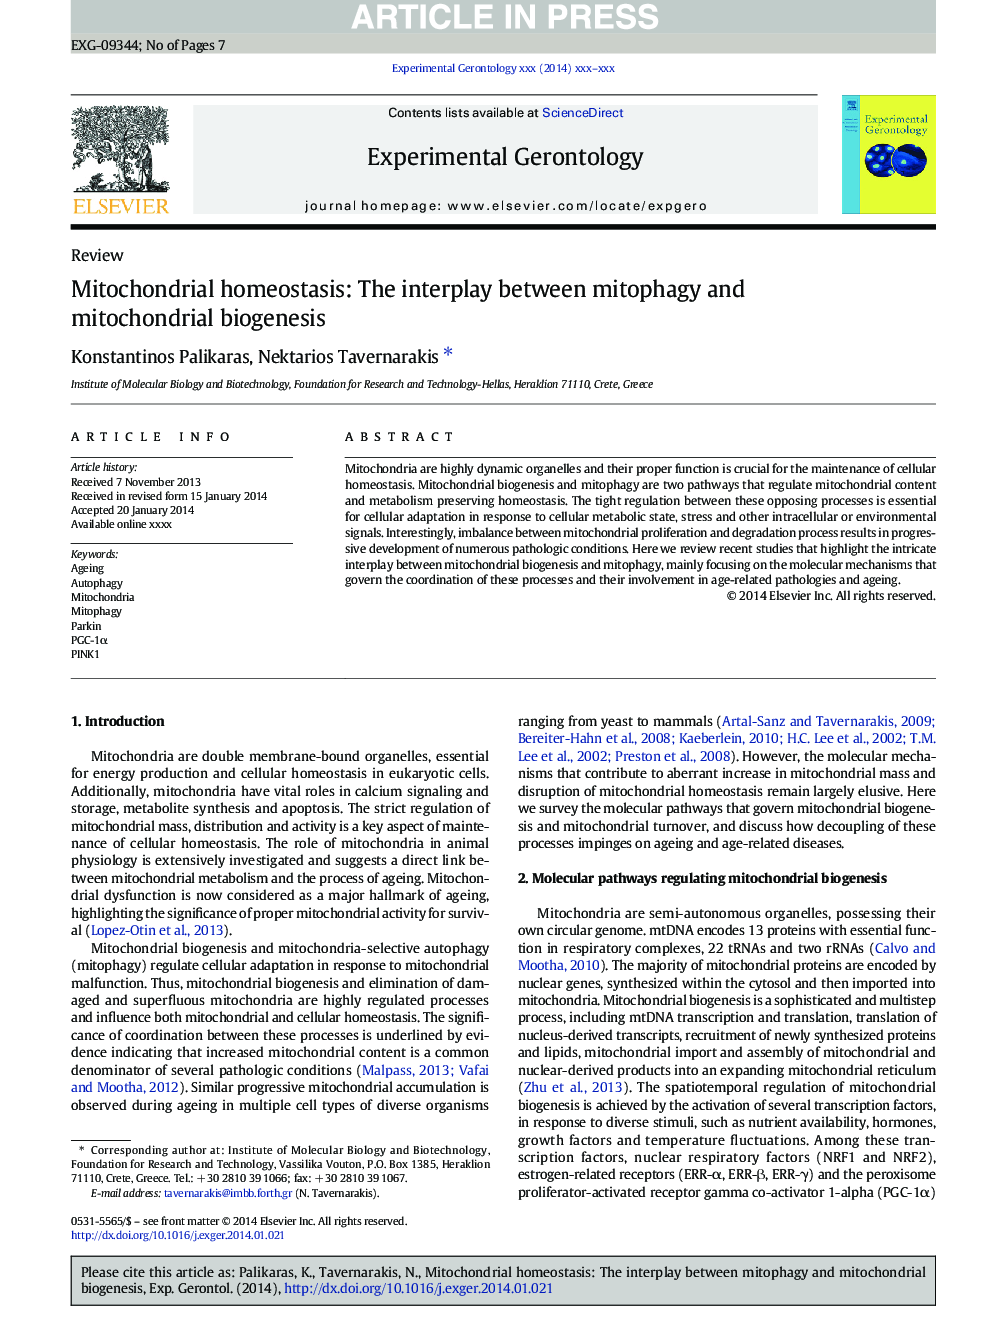 هوموستاز میتوکندری: اثر متقابل بین میتوفاژی و بیوژنز میتوکندری 